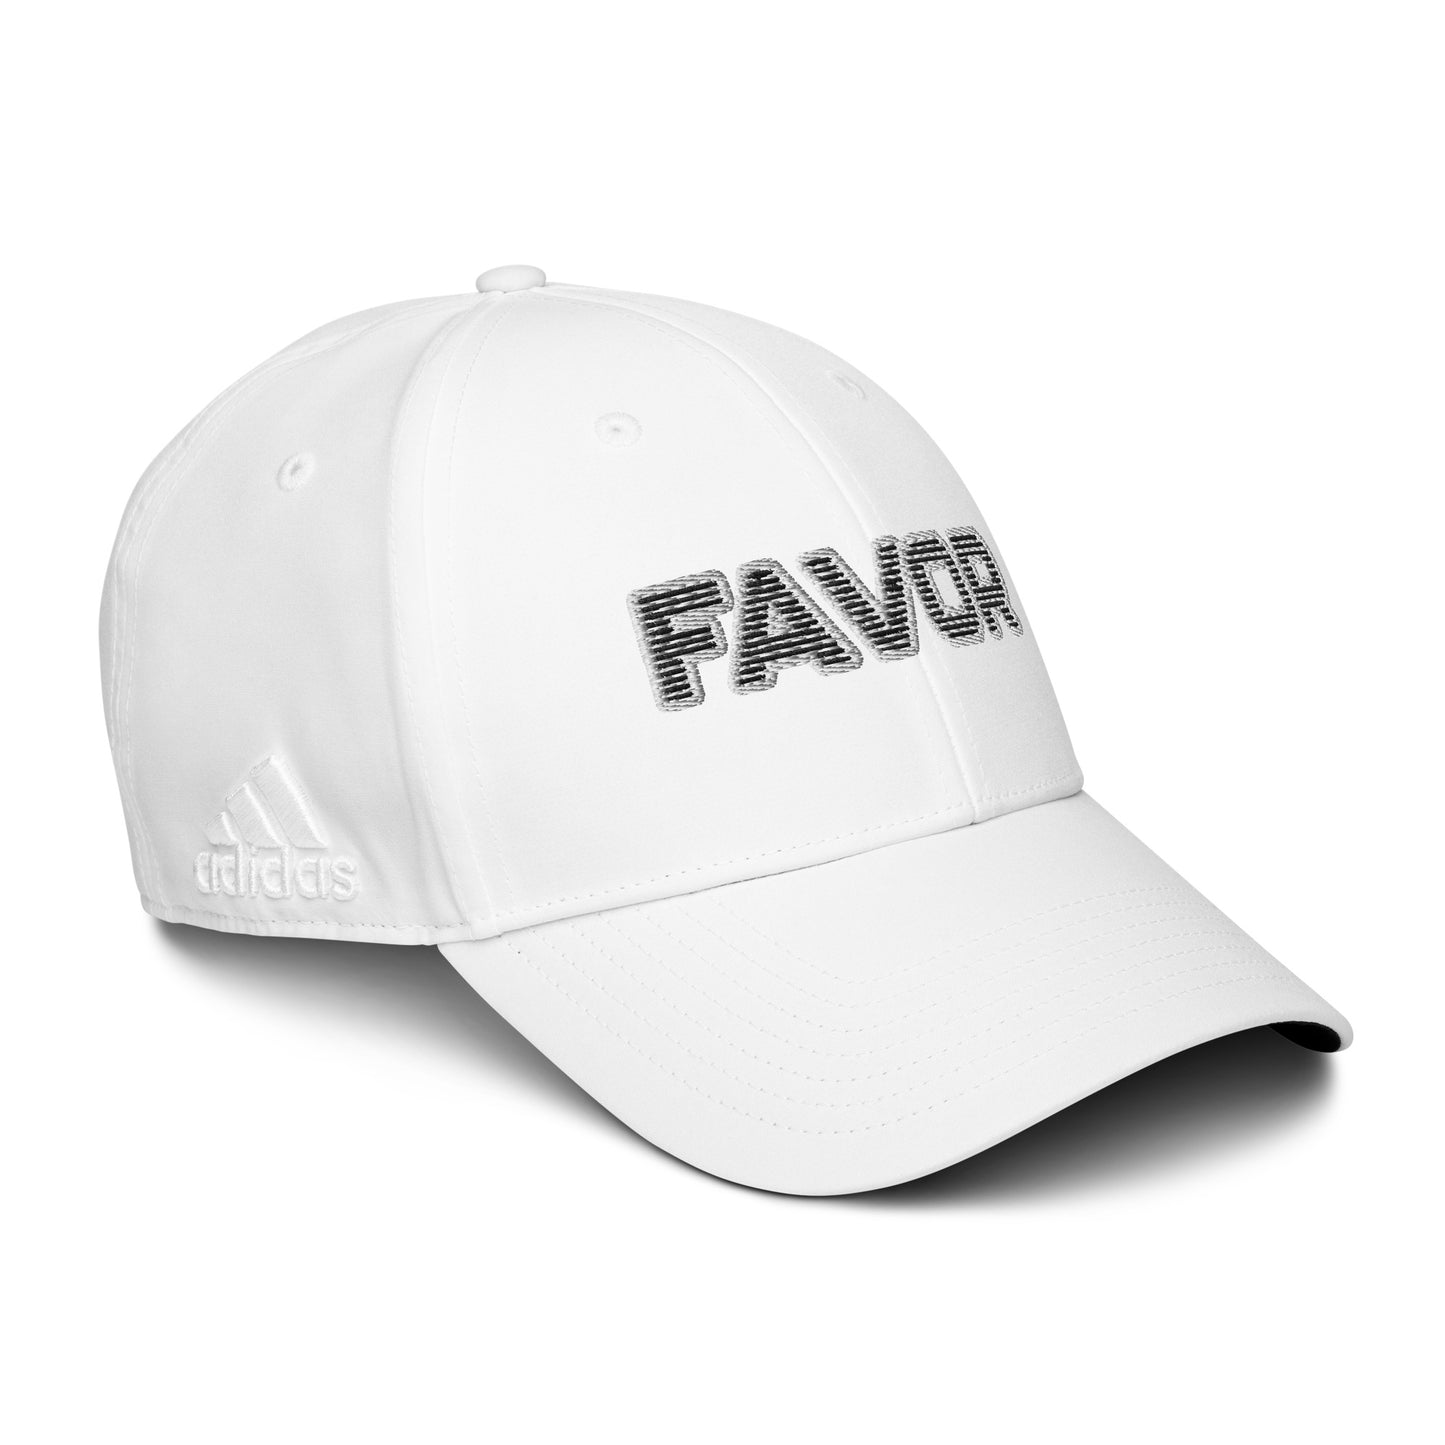 FAVOR- adidas dad hat